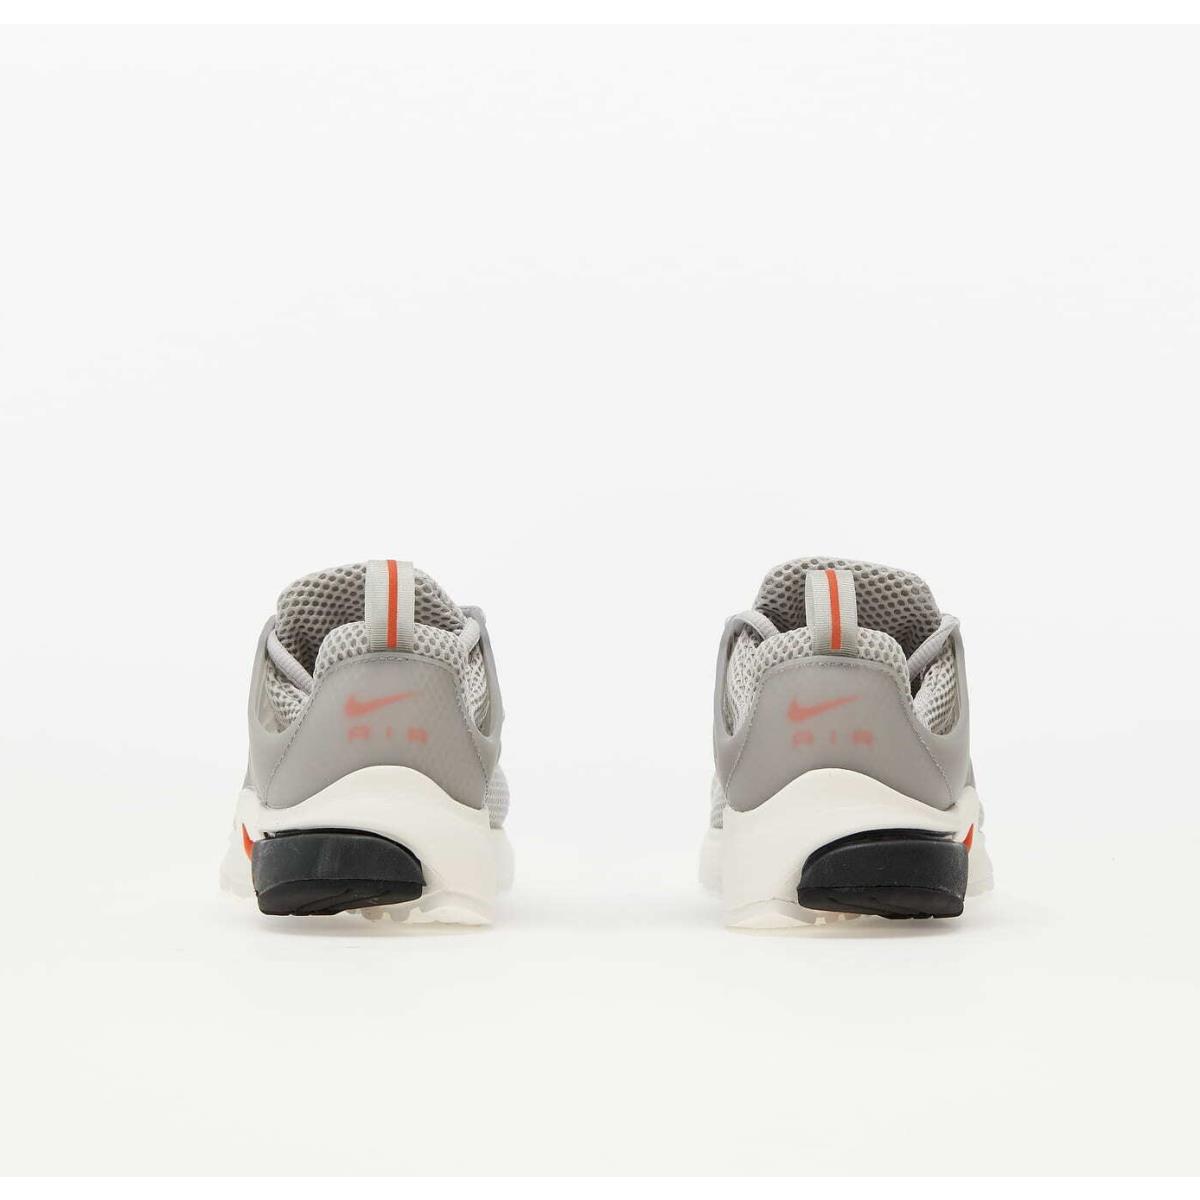 Nike shoes Air Presto - Grey Fog/ Team Orange- Sail , grey fog/ team orange- sail Manufacturer 1